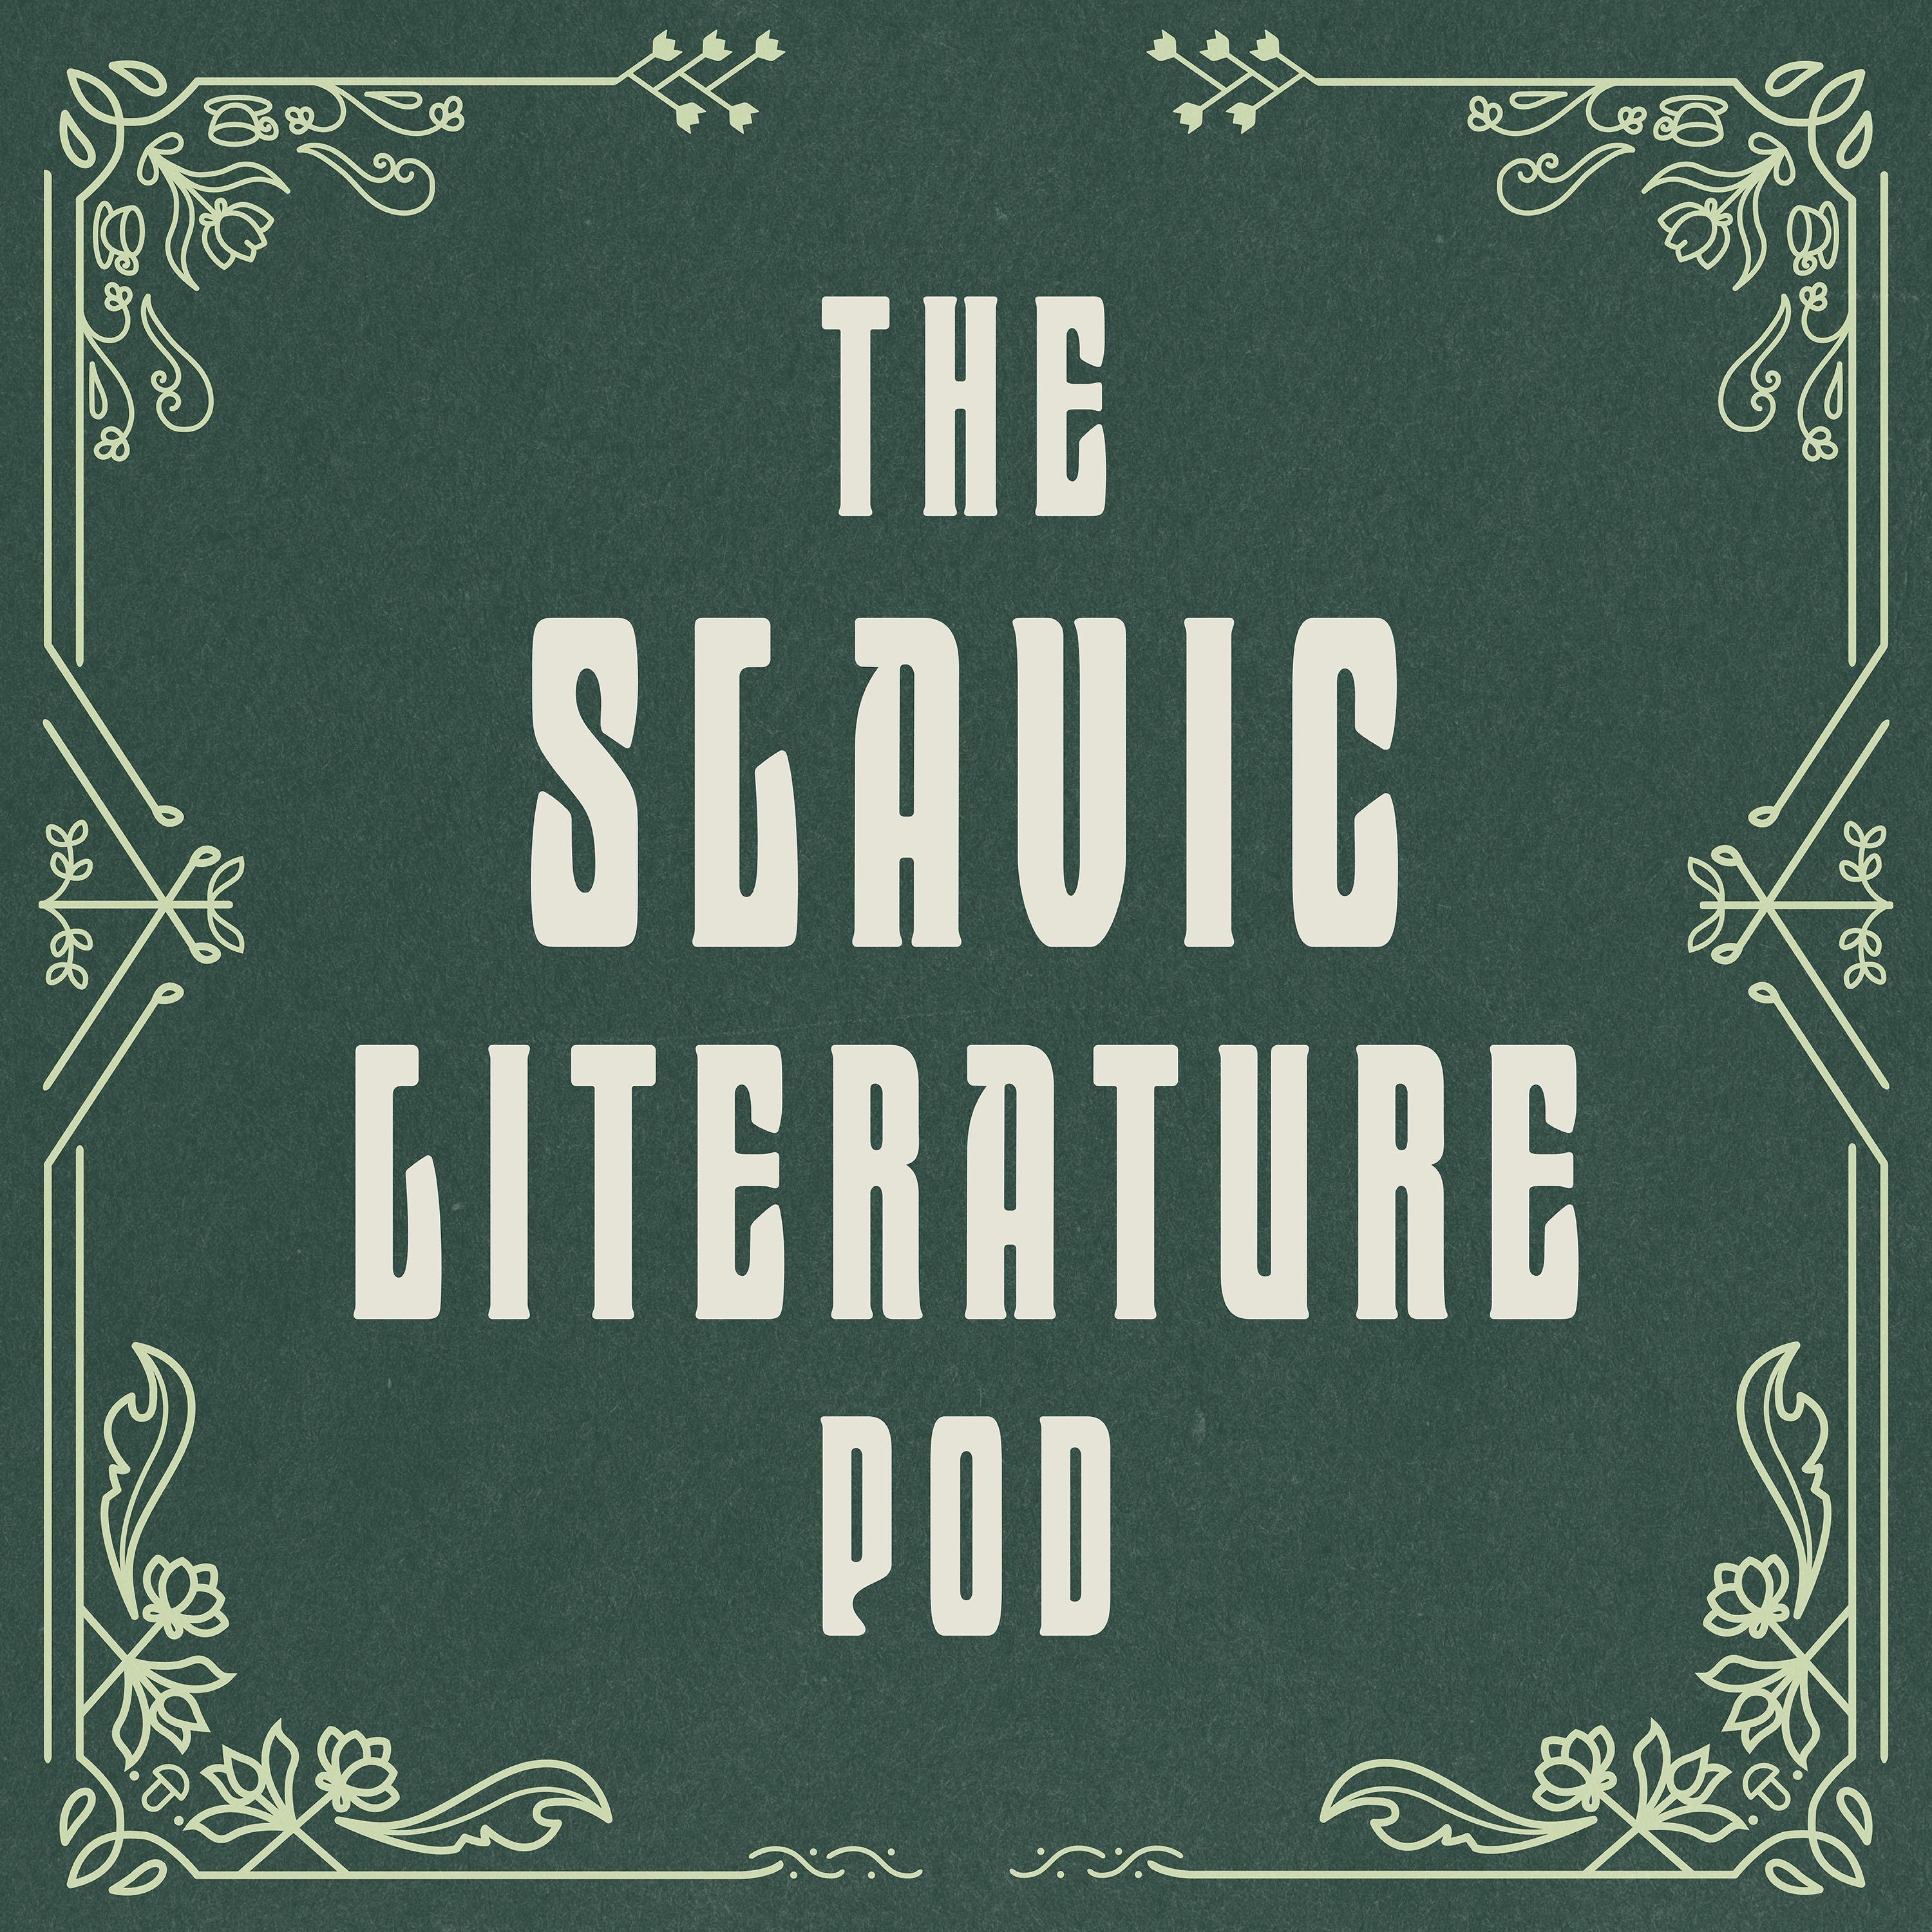 The Slavic Literature Pod